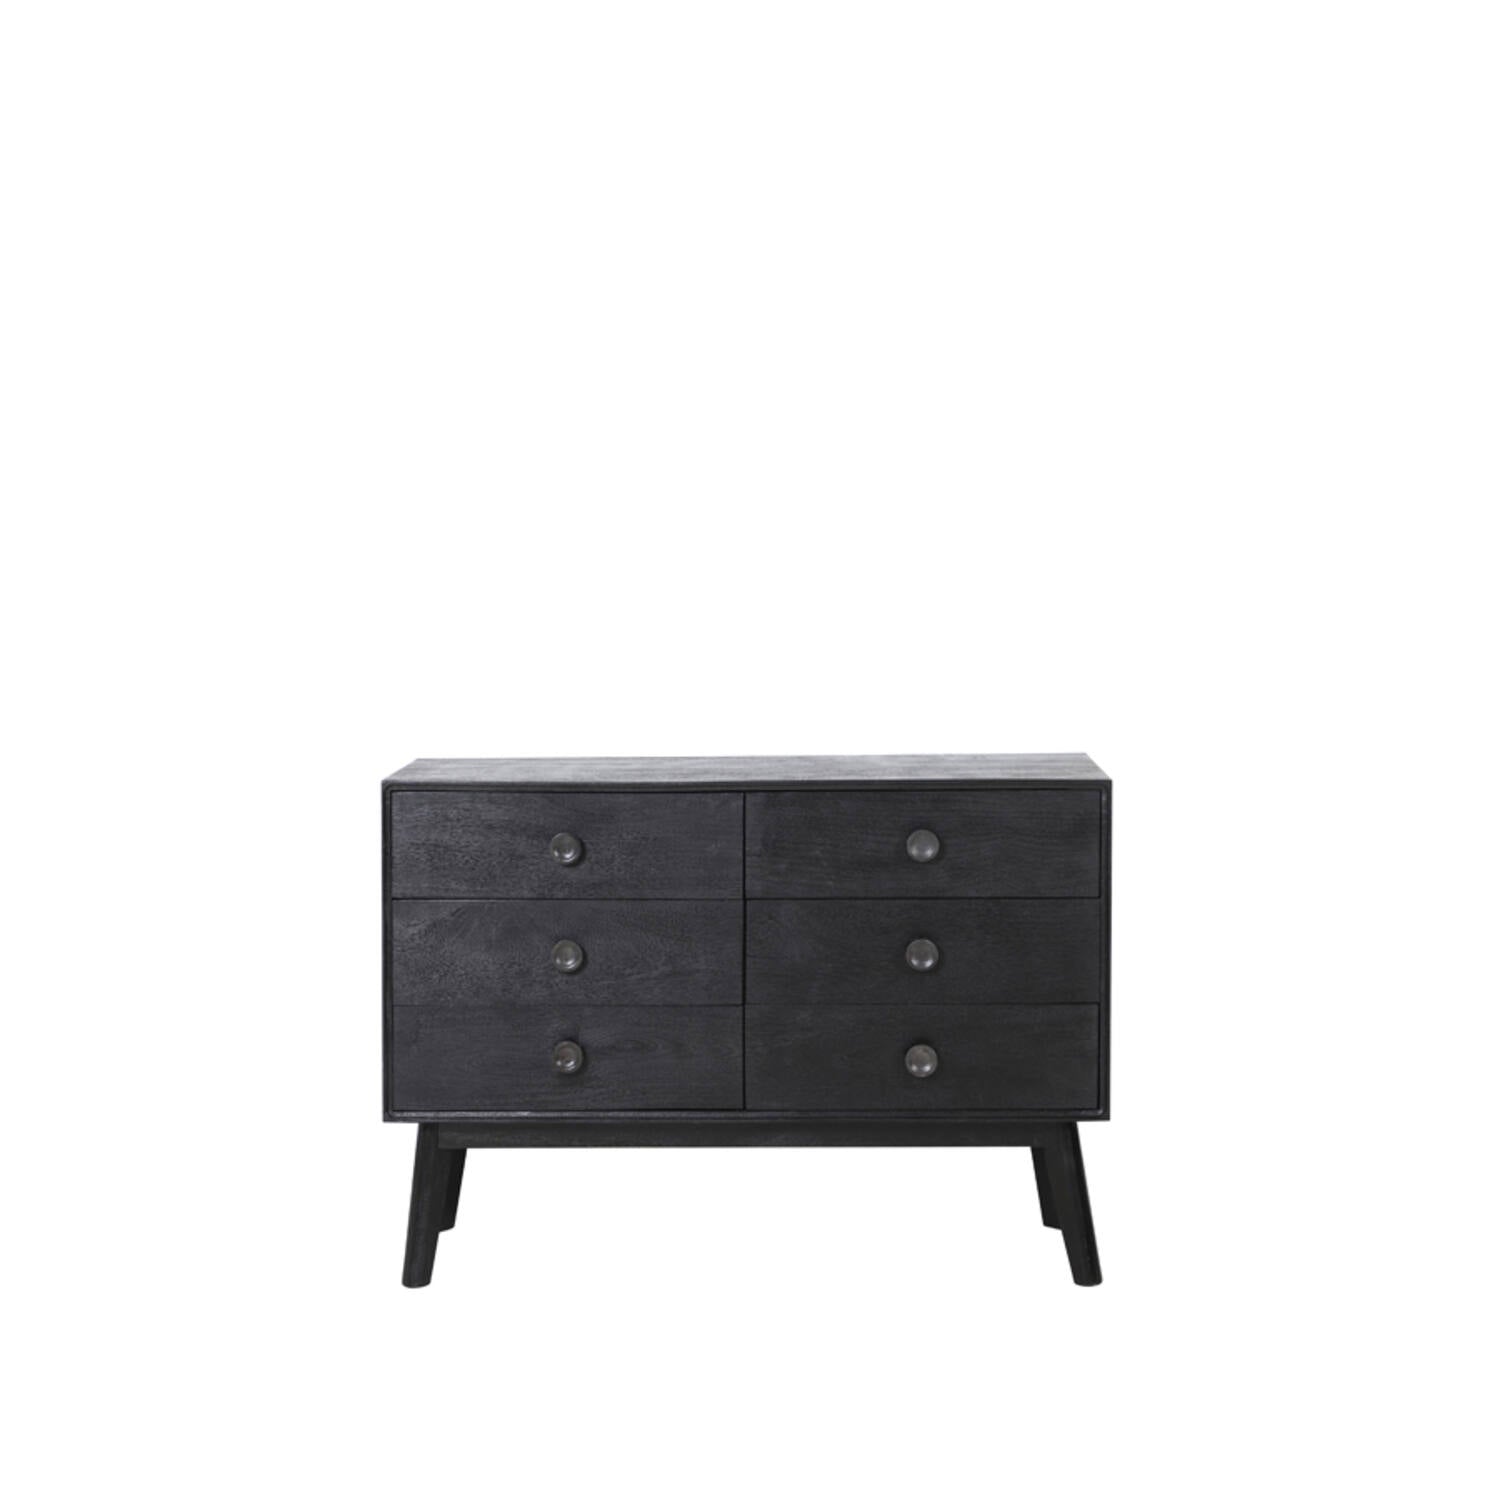 Espita Medium Cabinet - Black Wood Finish